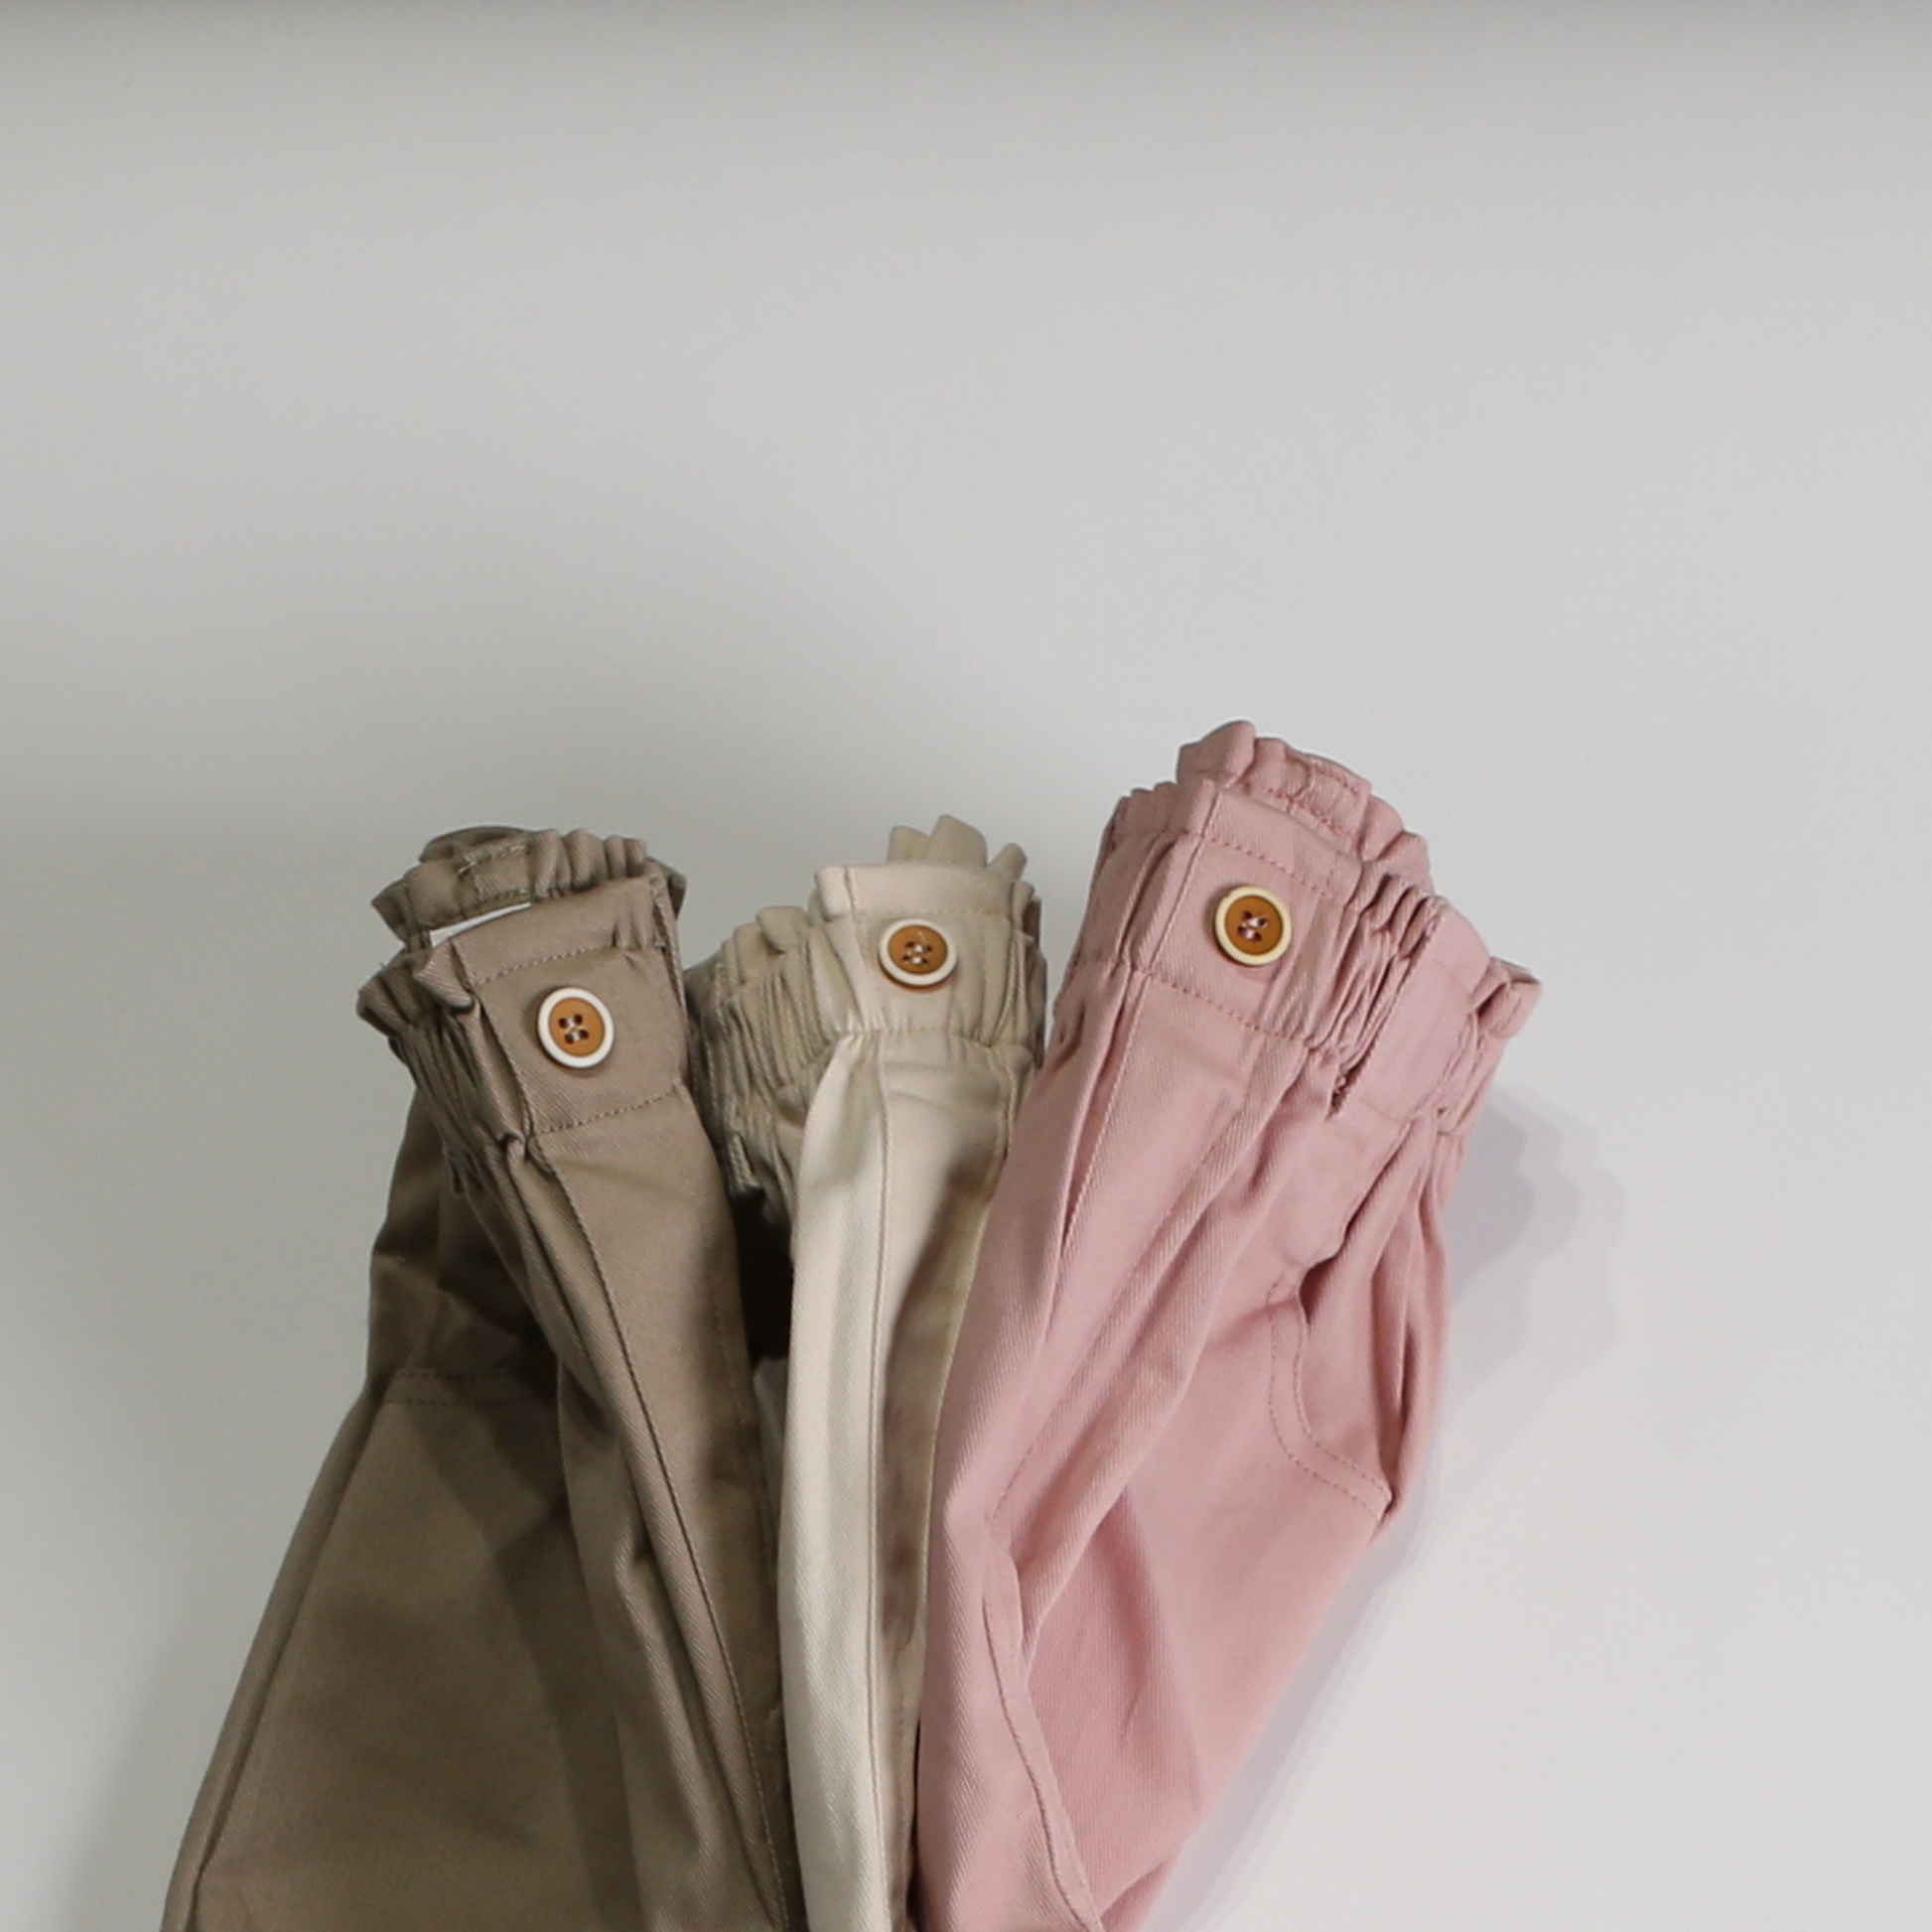 コットン パンツ / cotton pants (こども服) - kids clothes shop GUZUGUZU